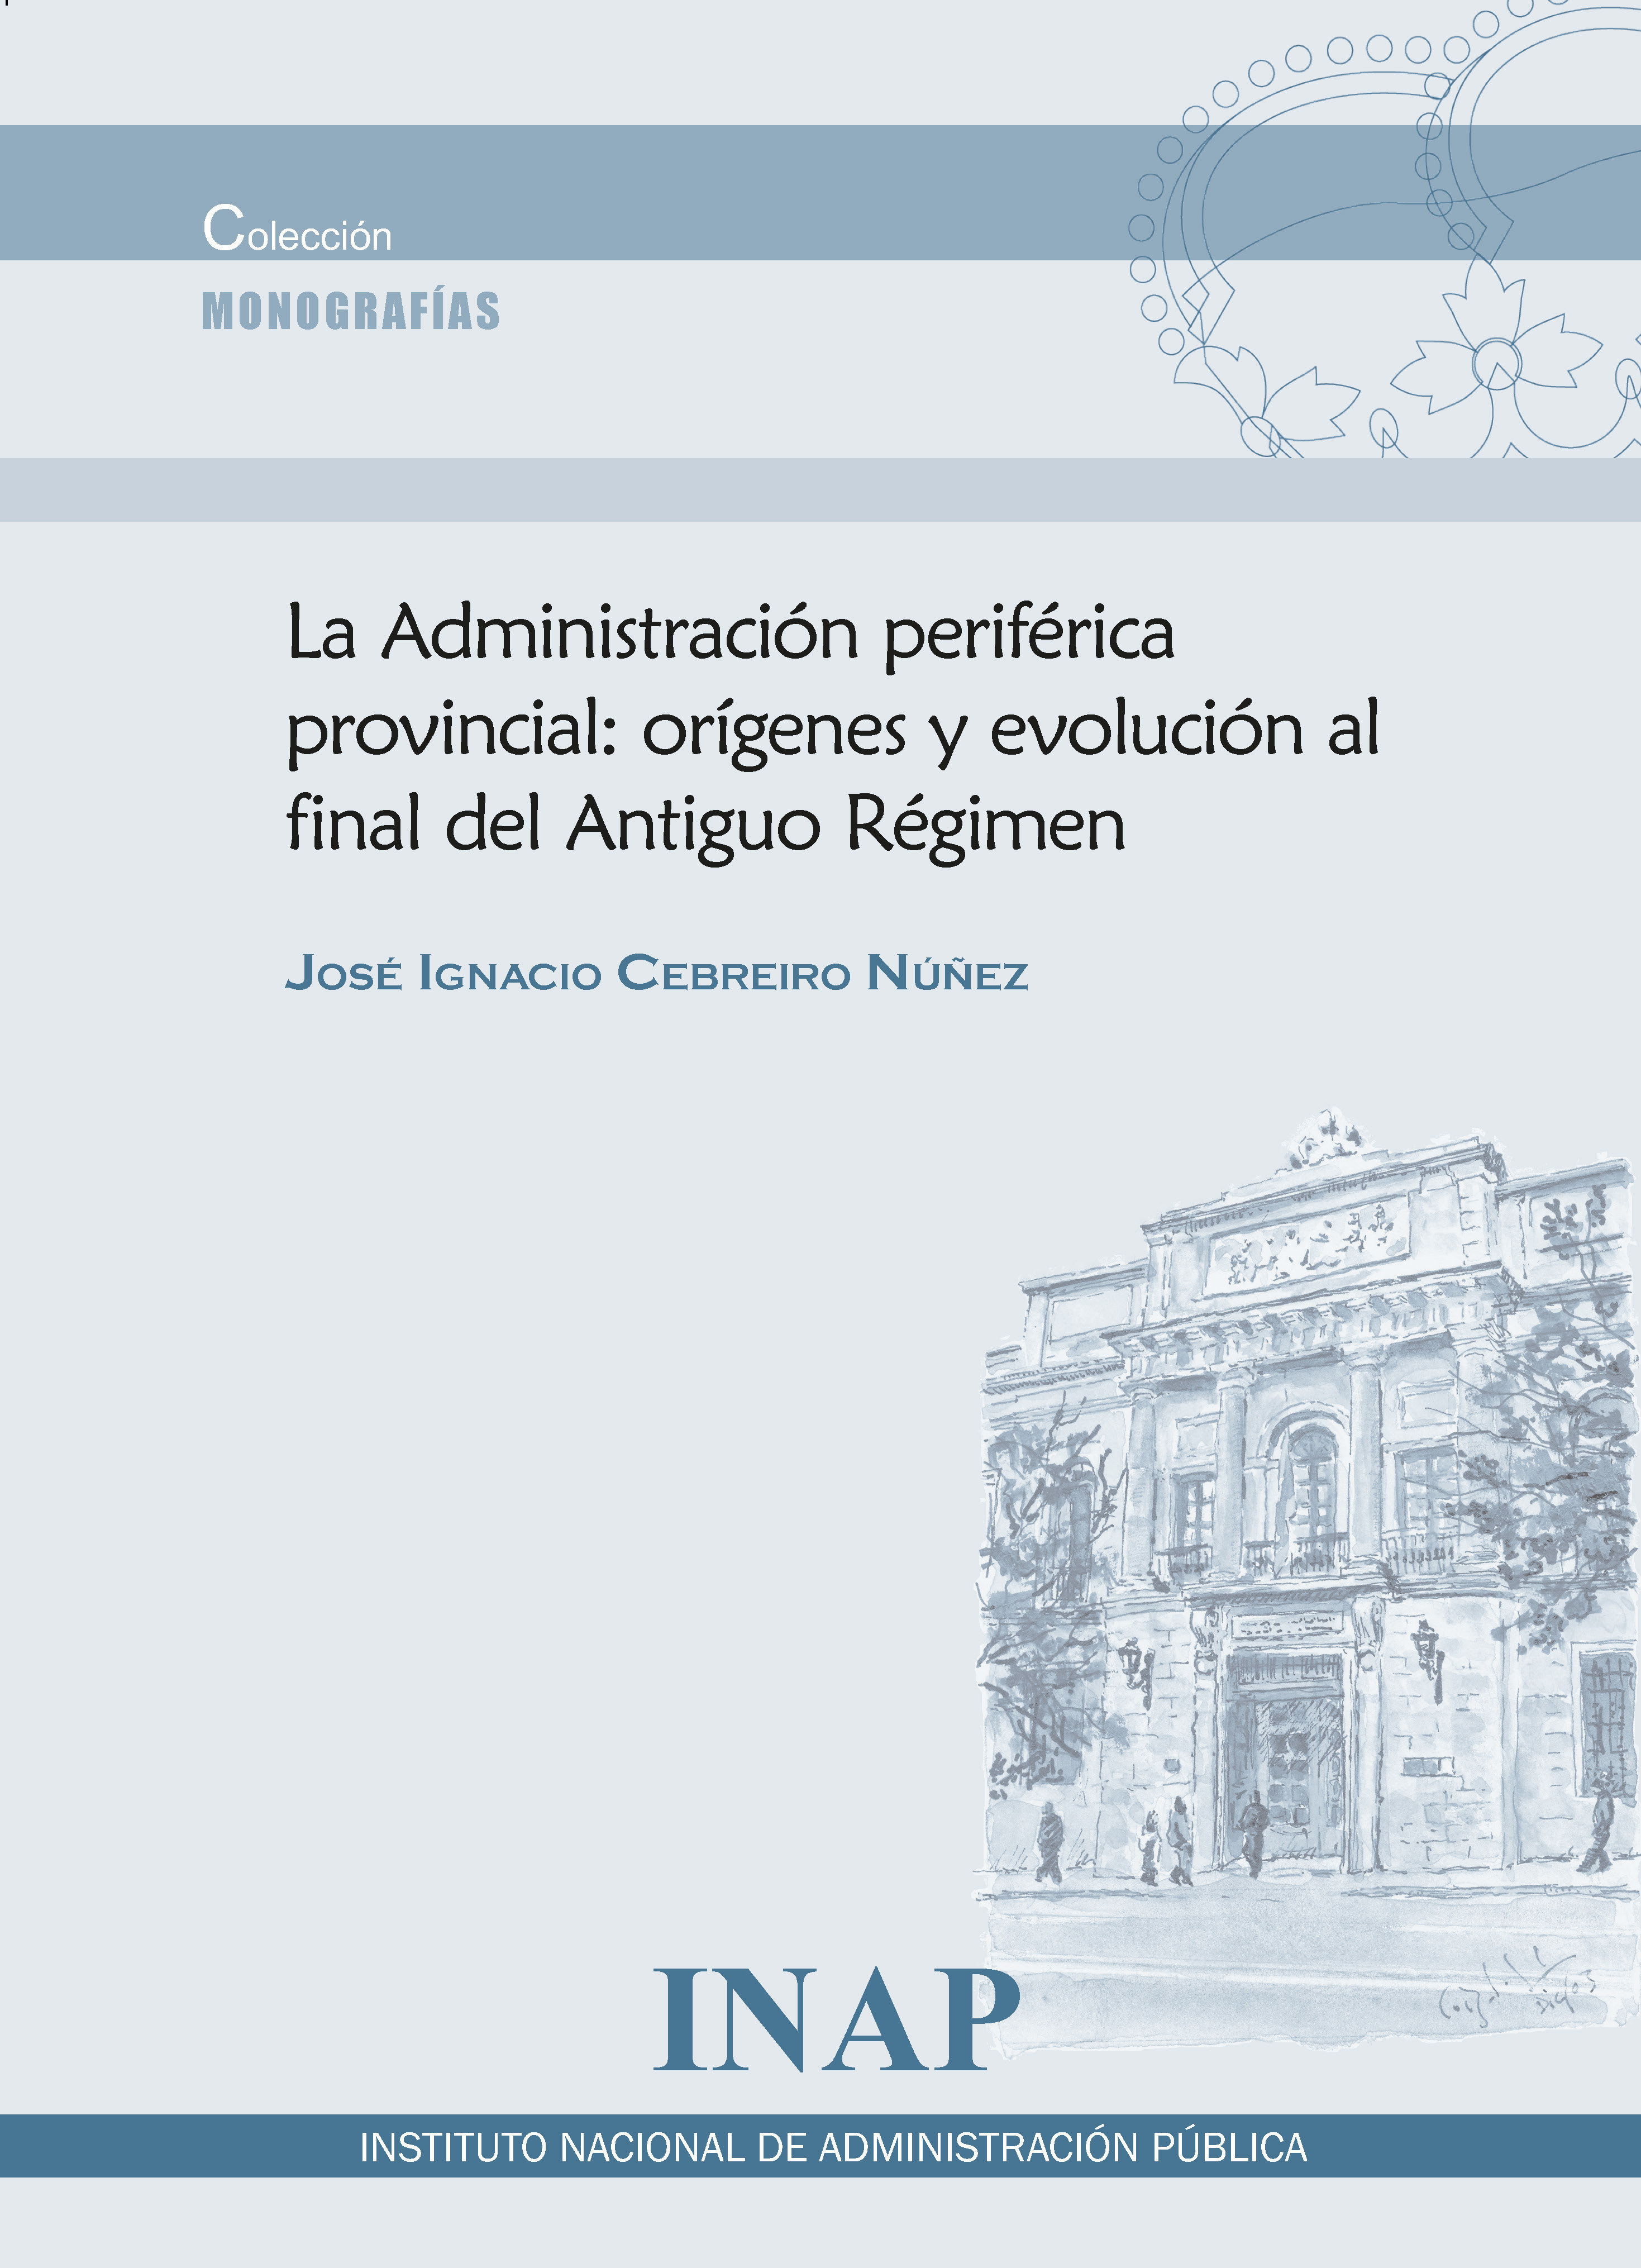 La Adminsitración periférica provincial: orígenes y evolución al final del Antiguo Régimen 